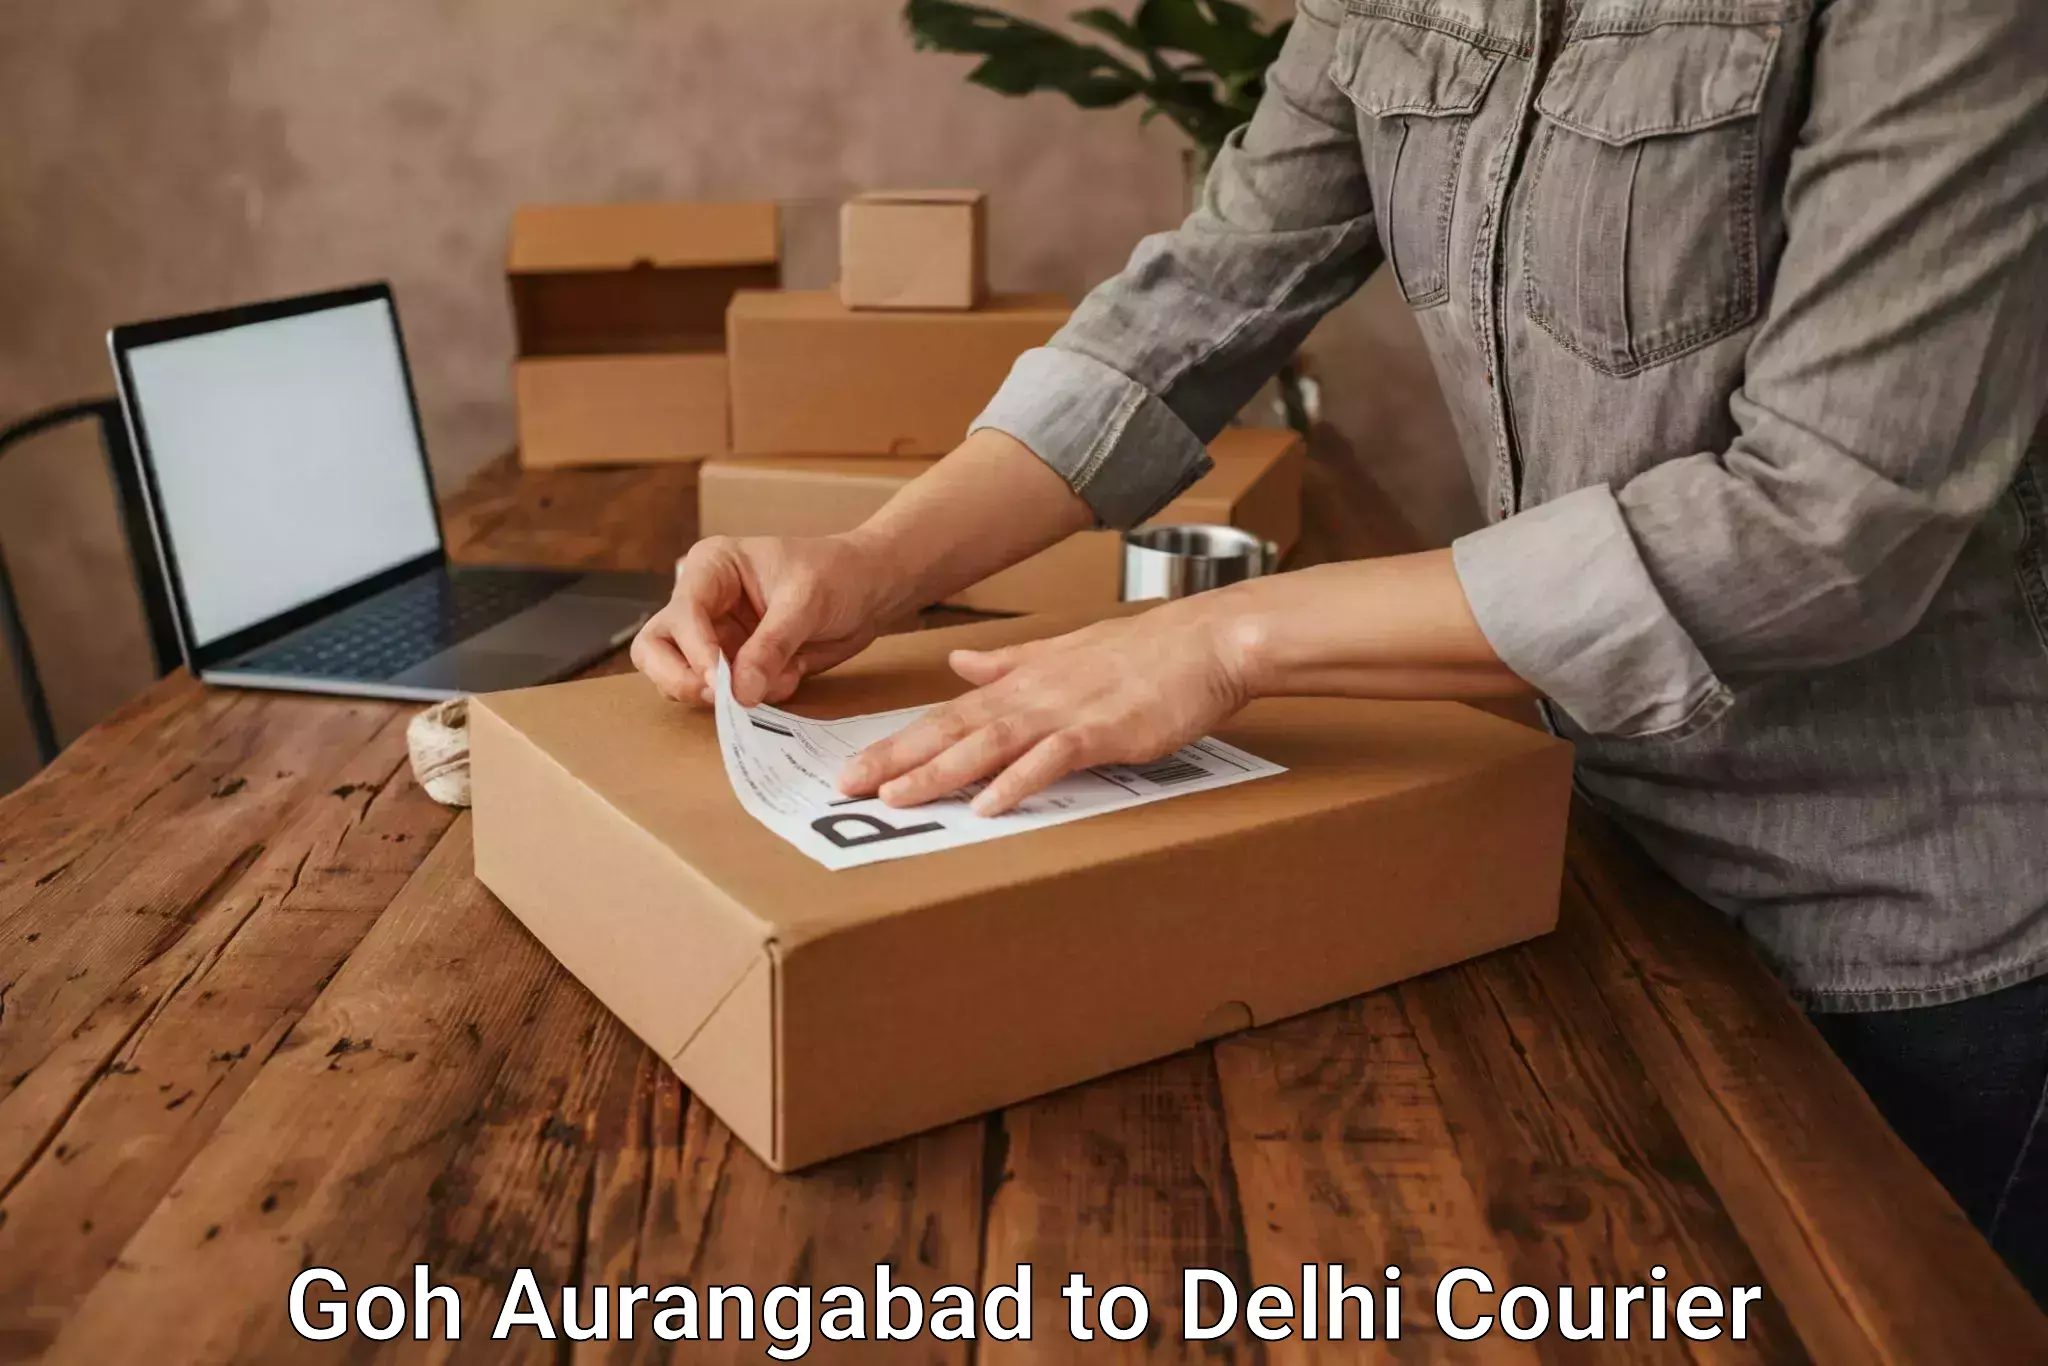 Furniture delivery service Goh Aurangabad to Lodhi Road